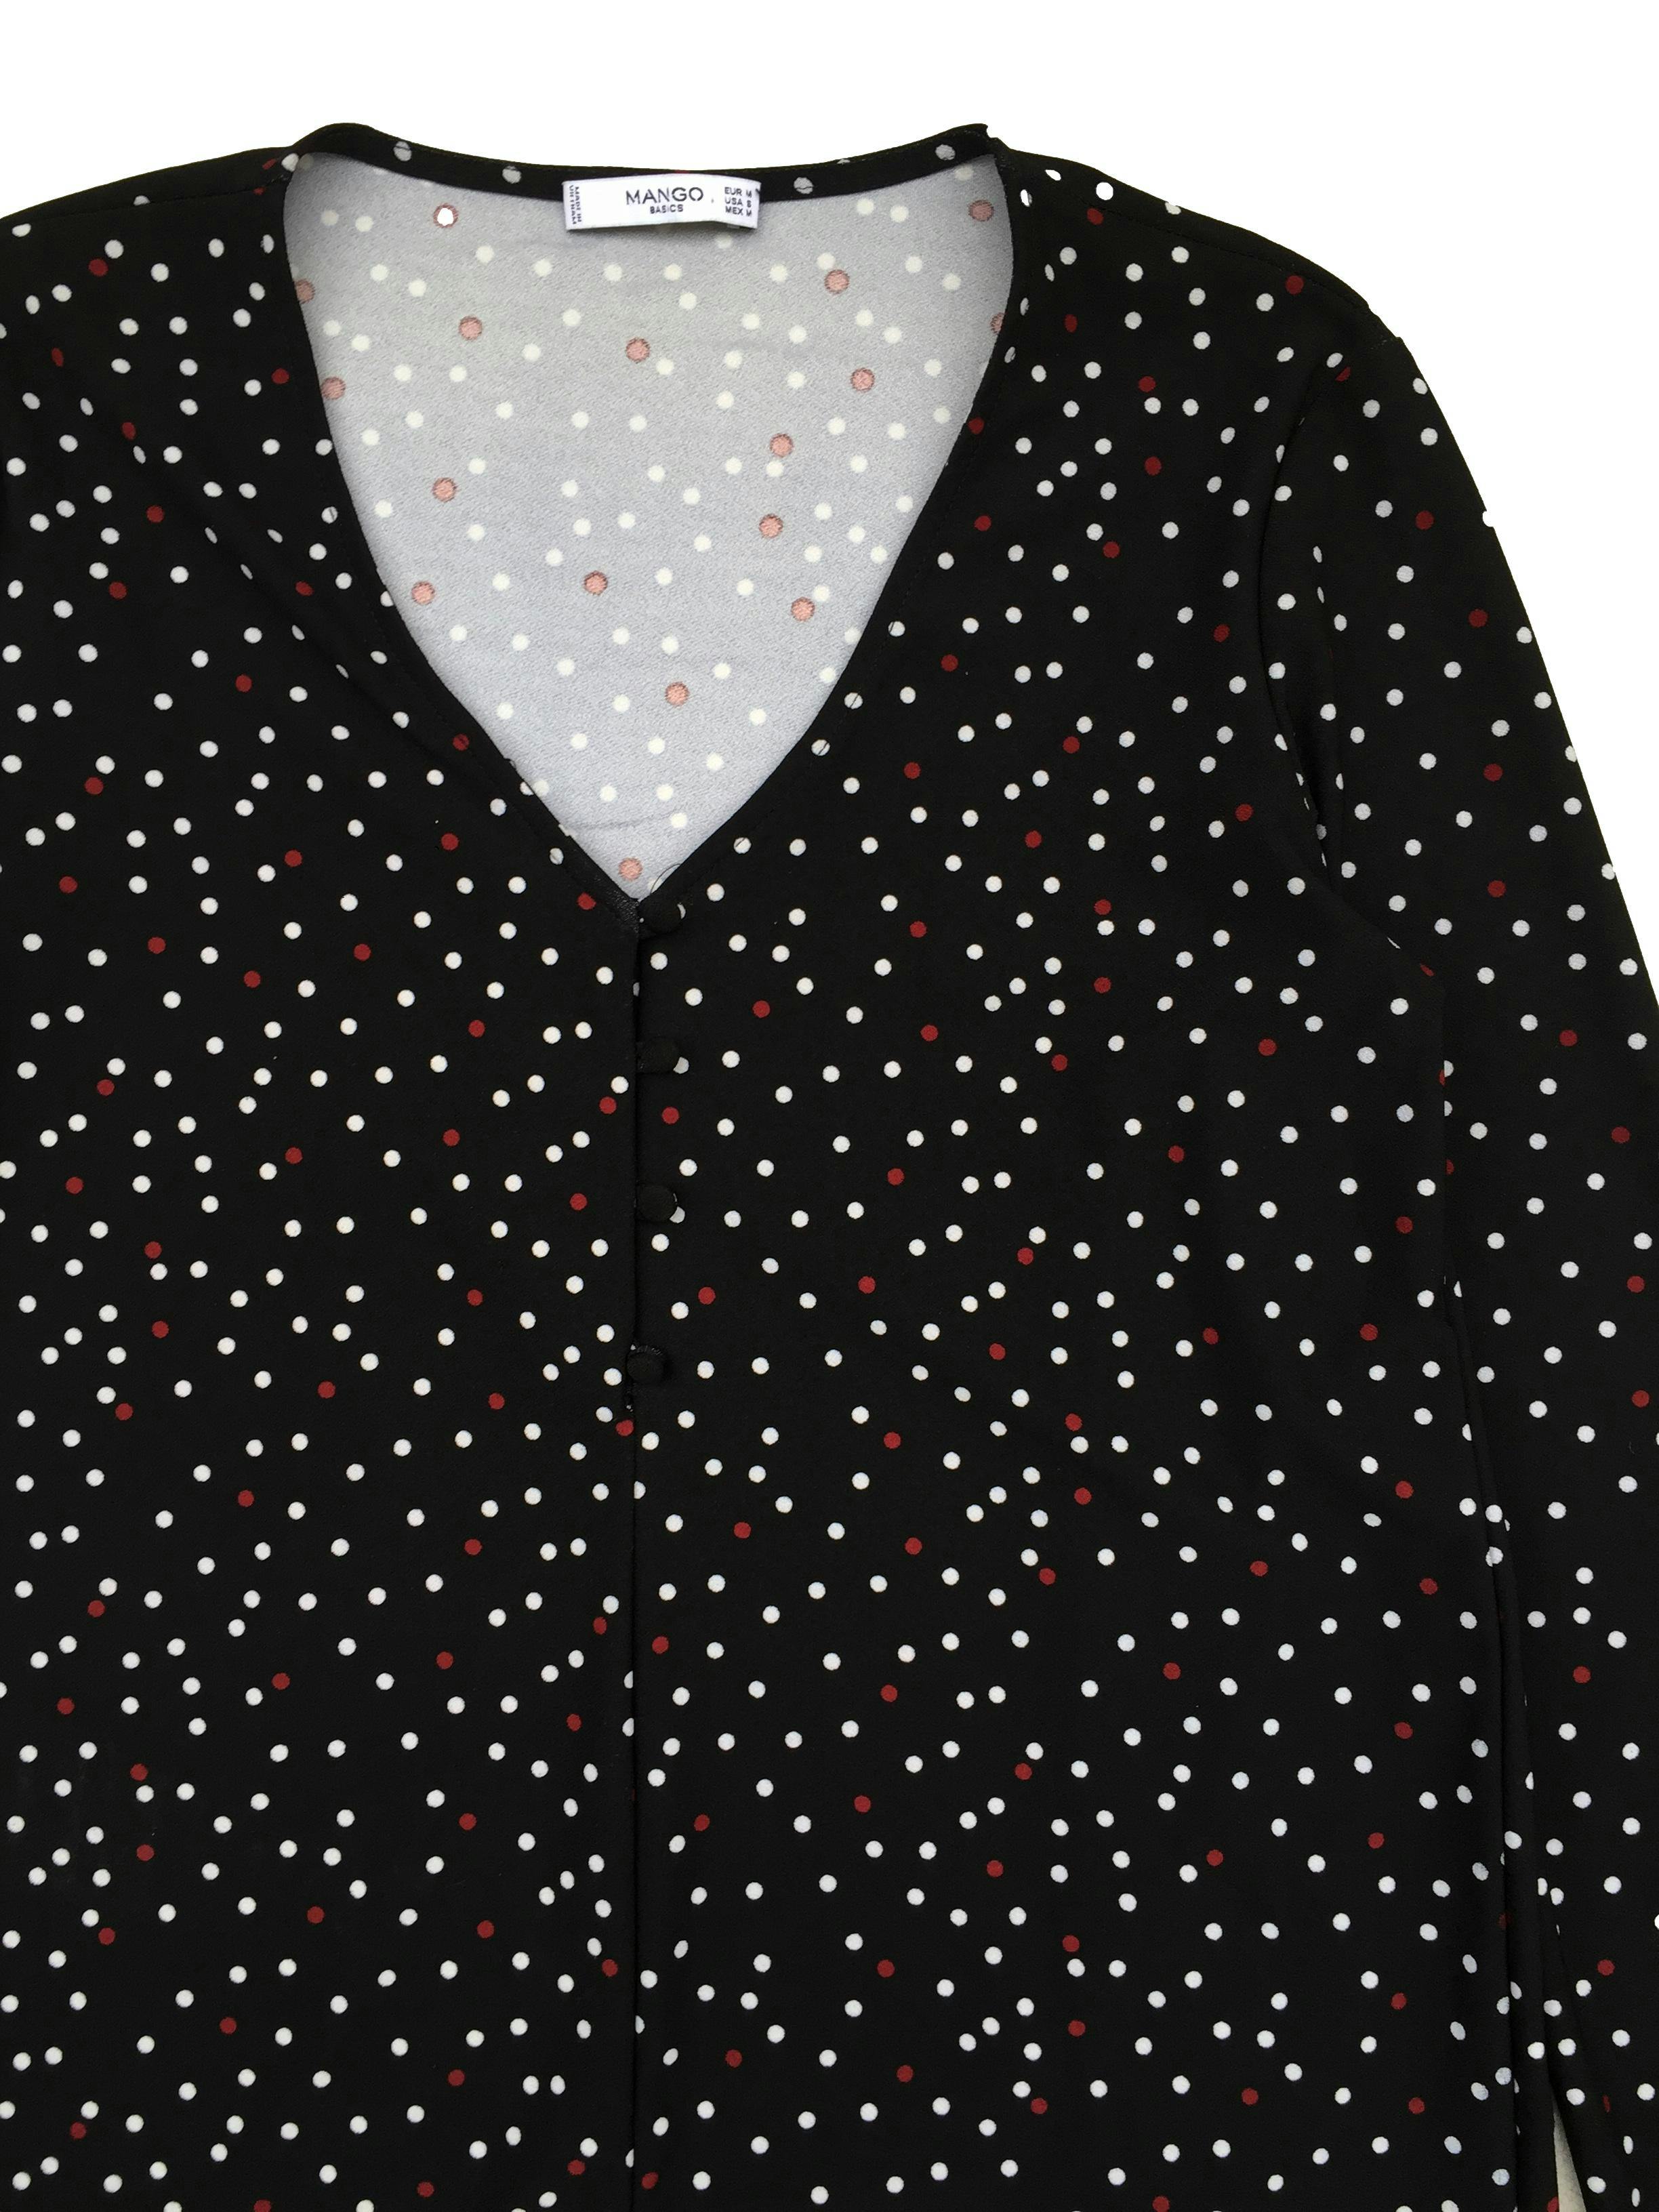 Vestido Mango negro con puntos blancos y rojos, botones delanteros, stretch. Busto: 100cm, Largo: 88cm